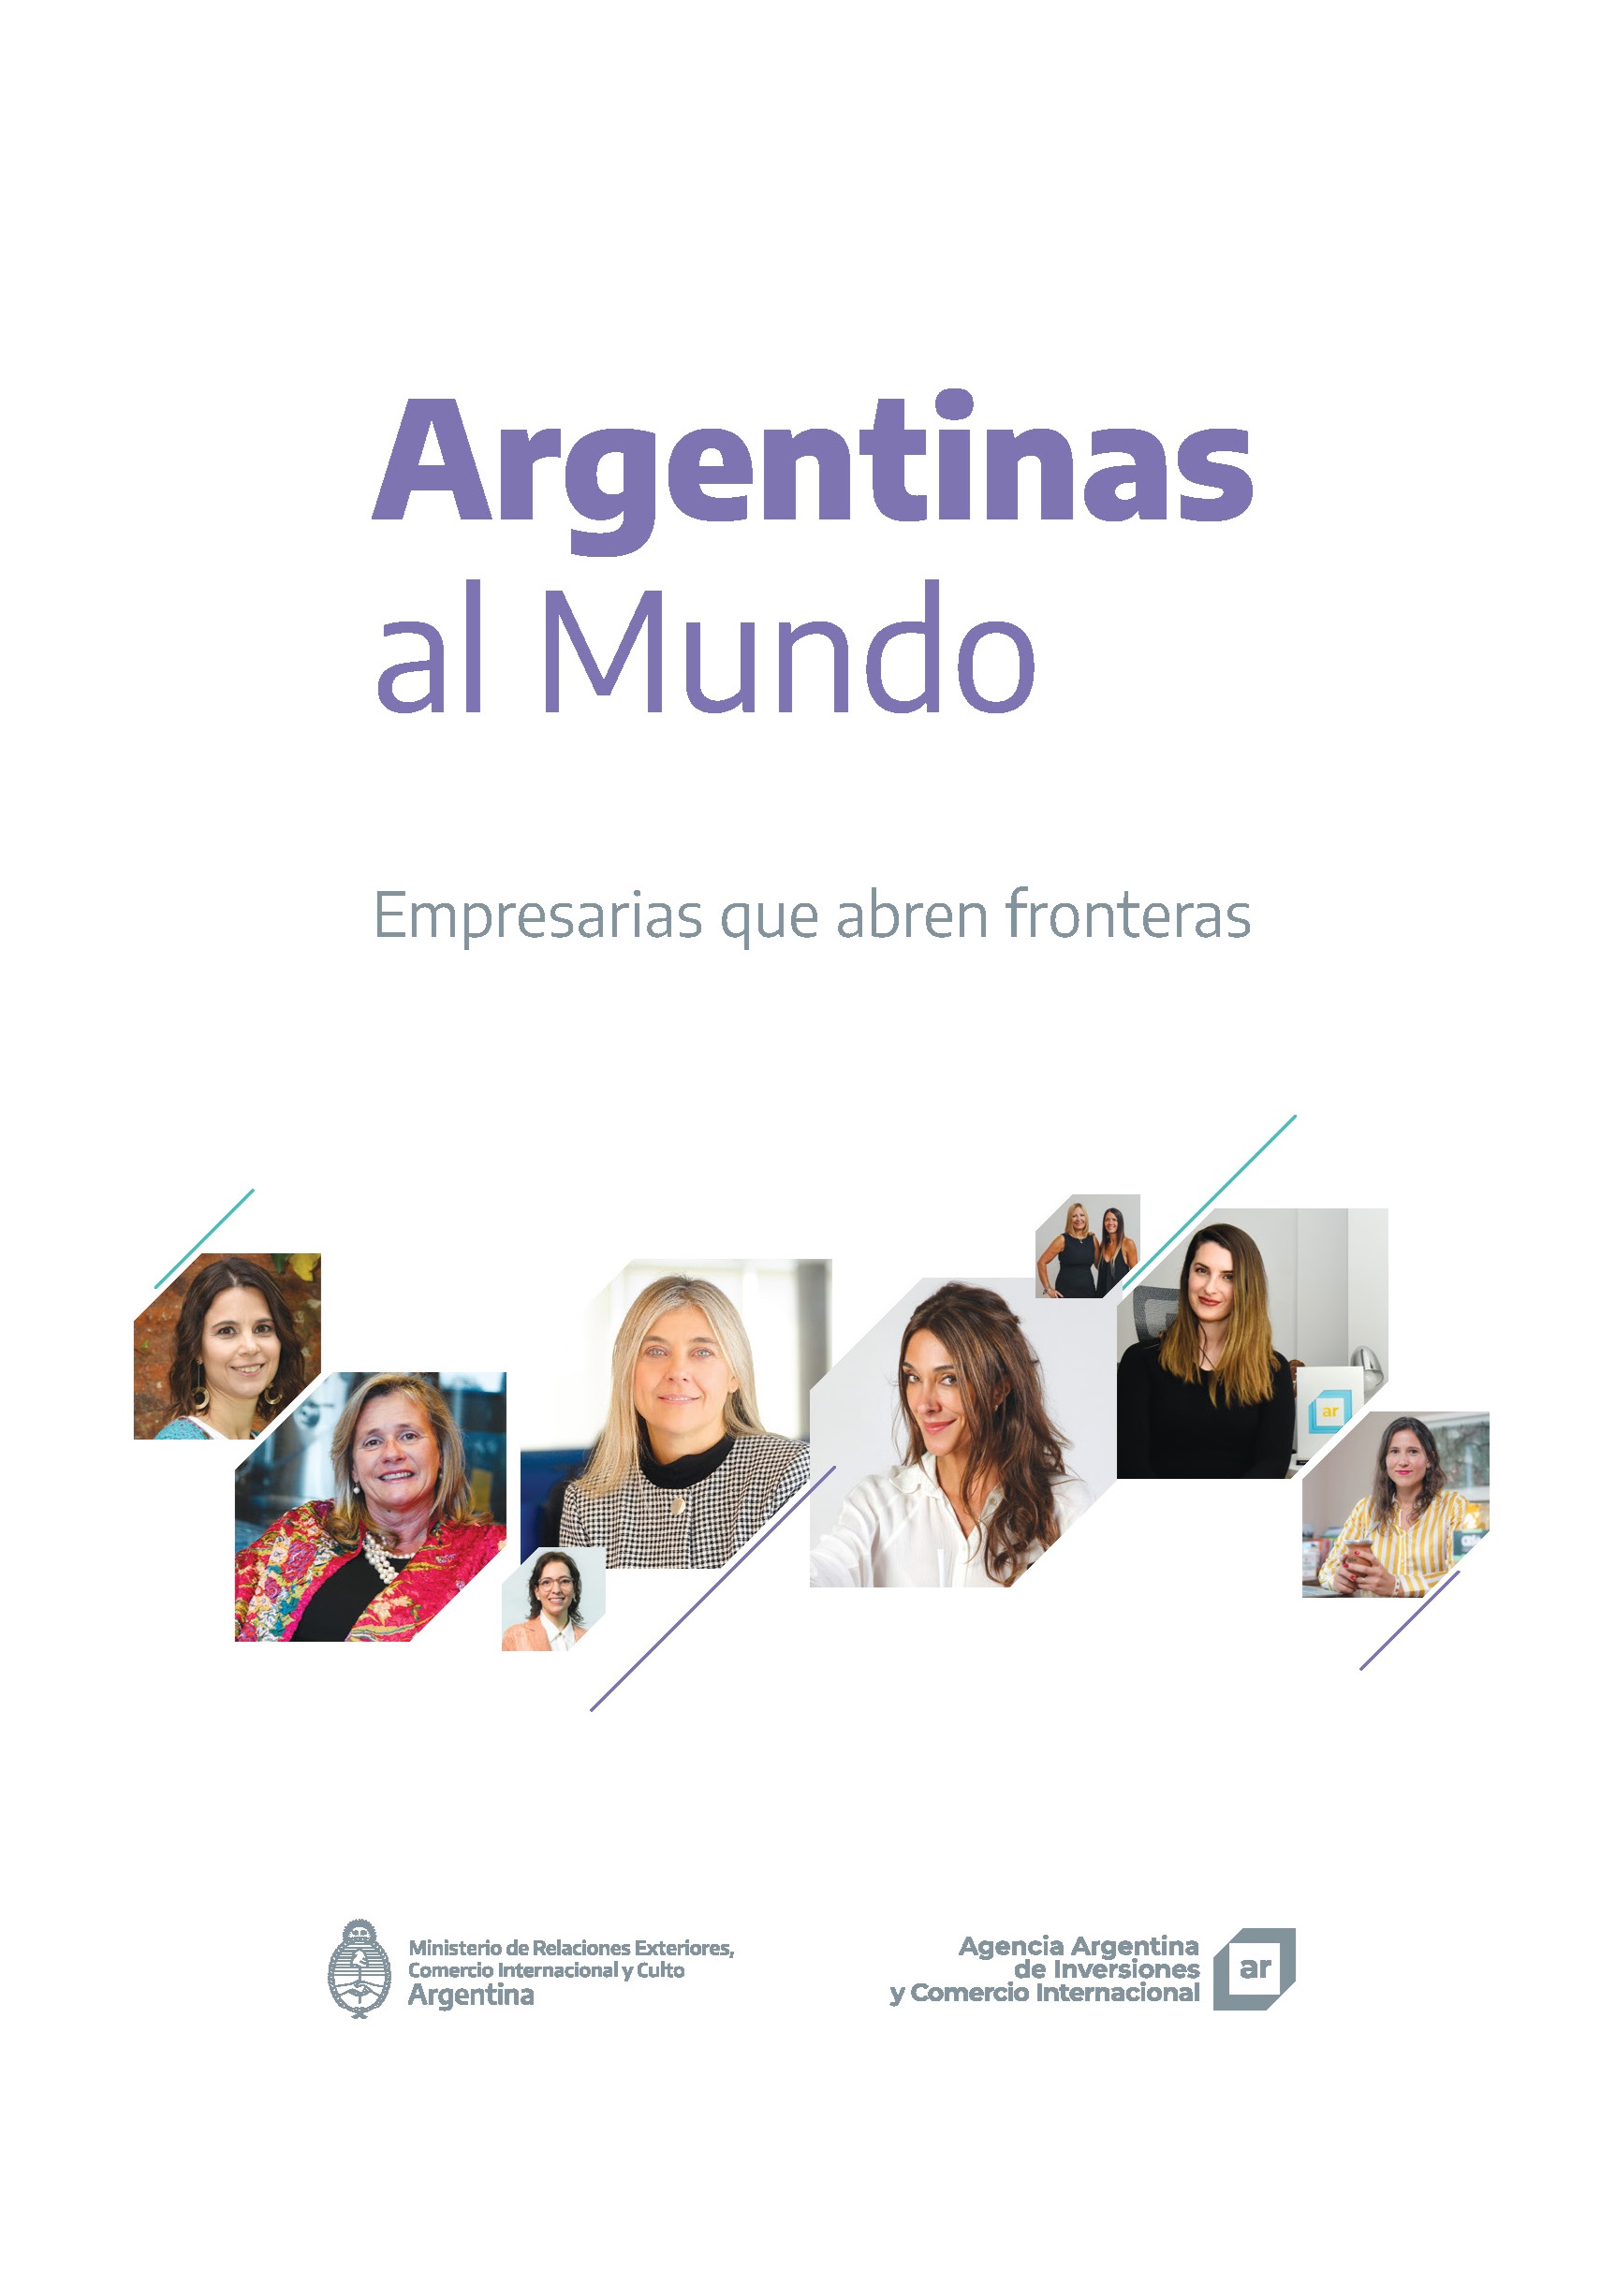 https://inversionycomercio.ar/images/publicaciones/Argentinas al Mundo. Empresarias que abren fronteras